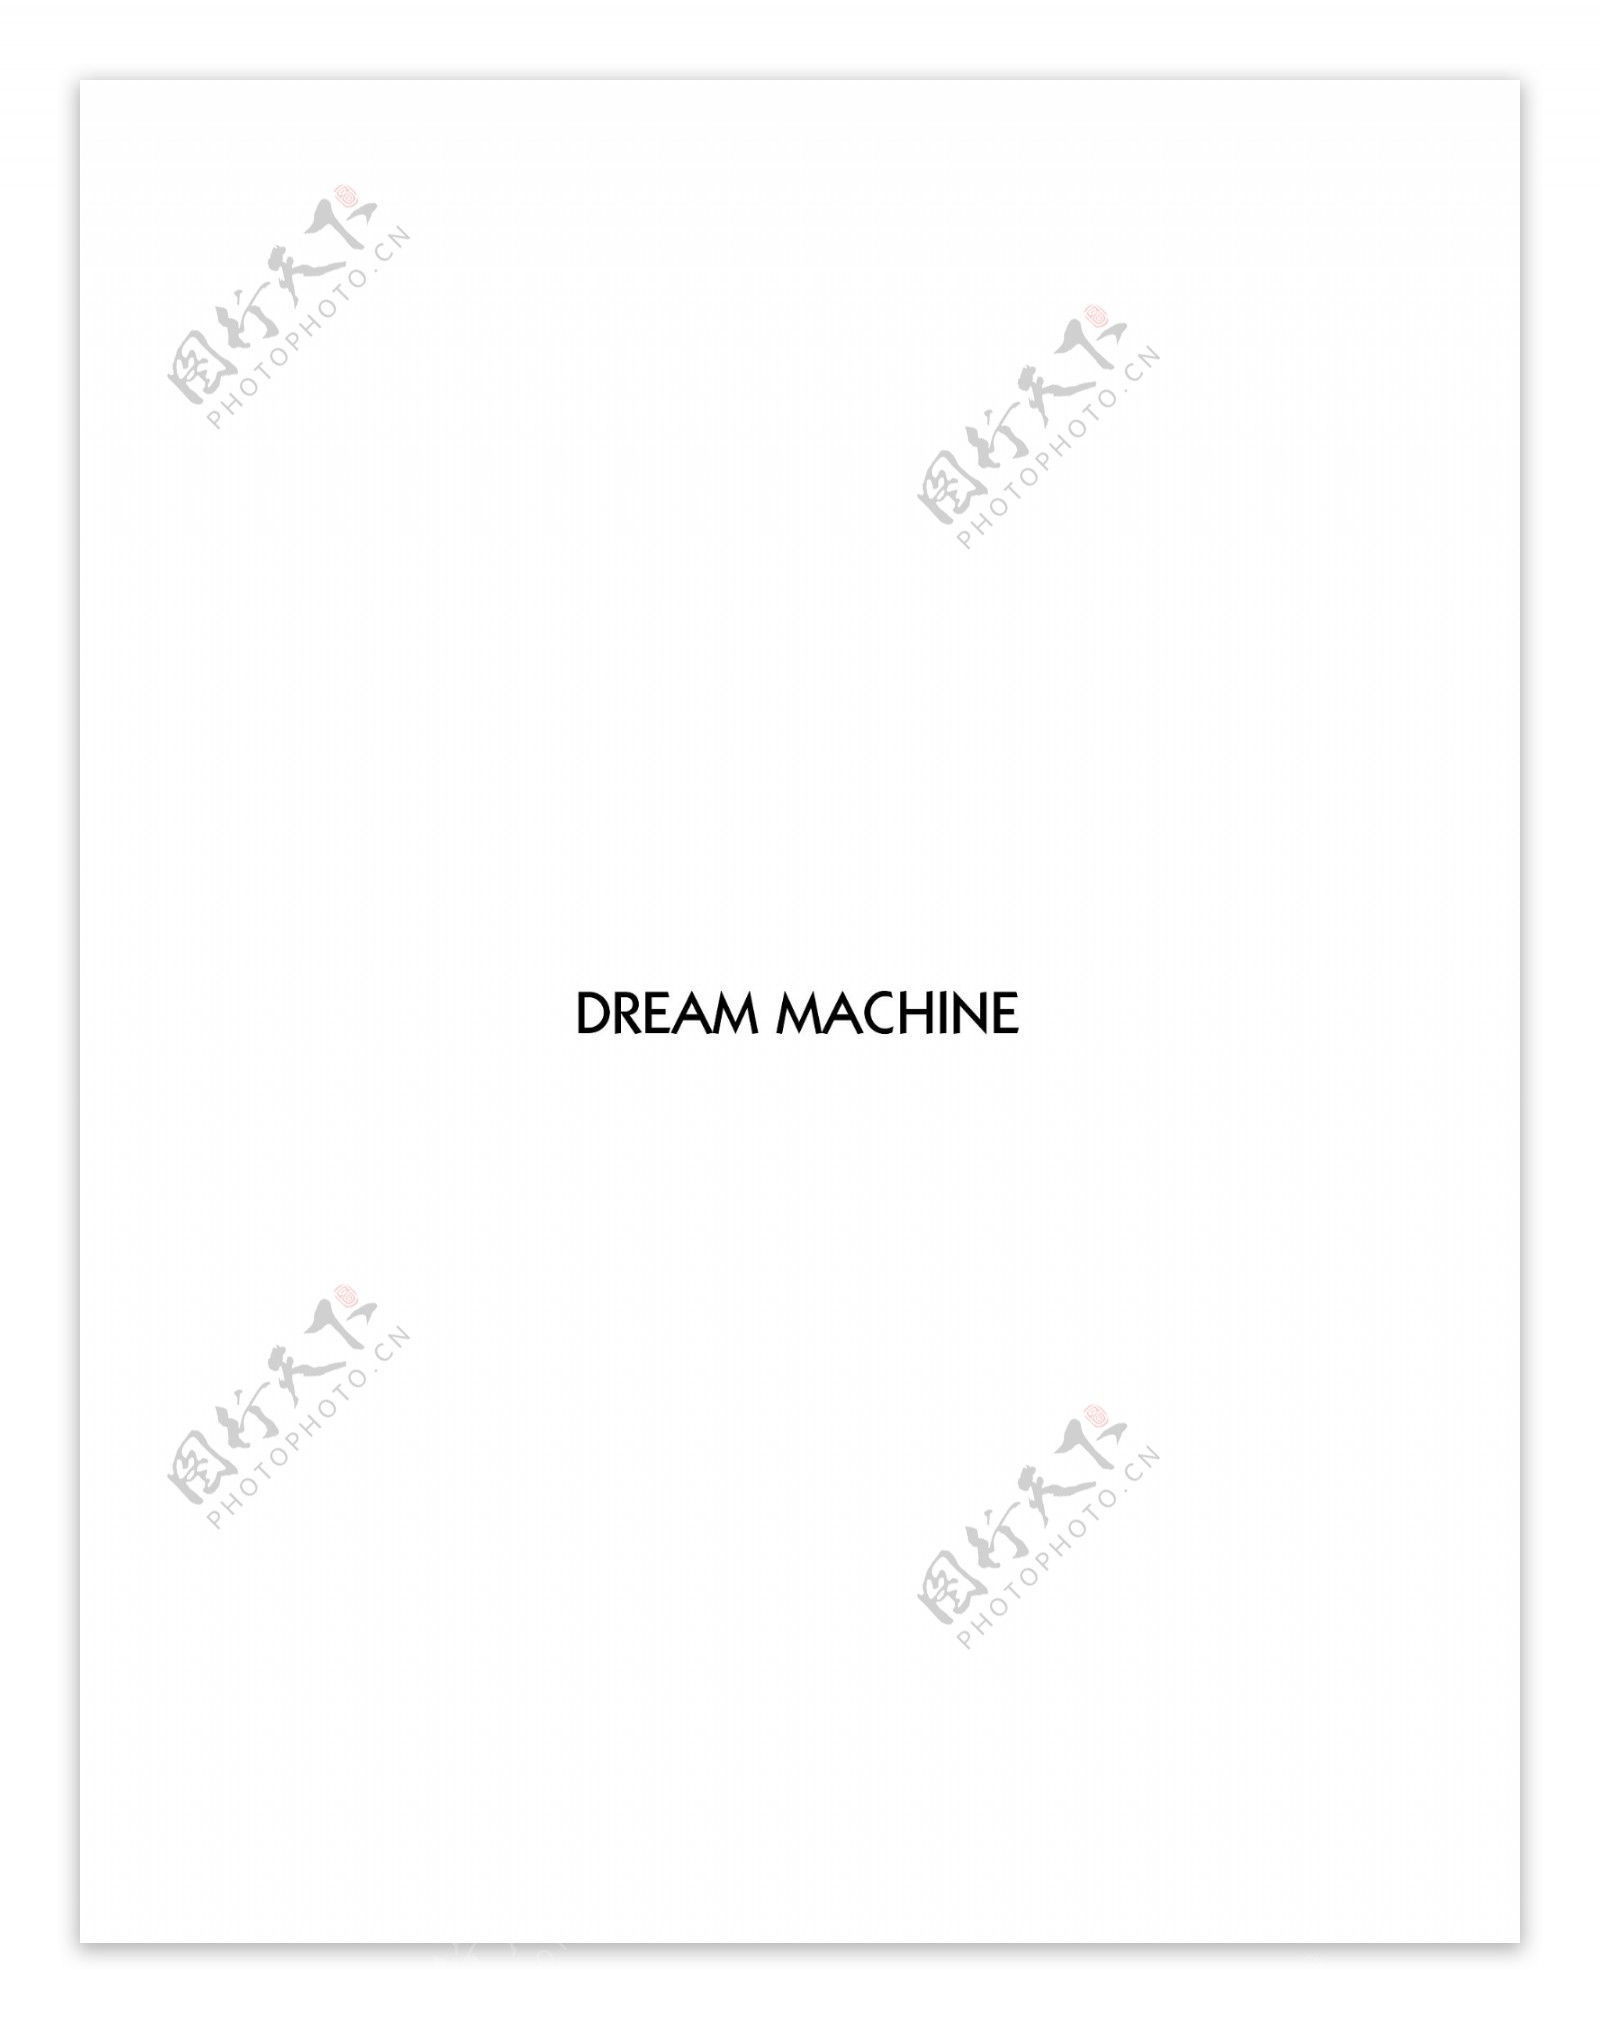 DreamMachinelogo设计欣赏电脑相关行业LOGO标志DreamMachine下载标志设计欣赏